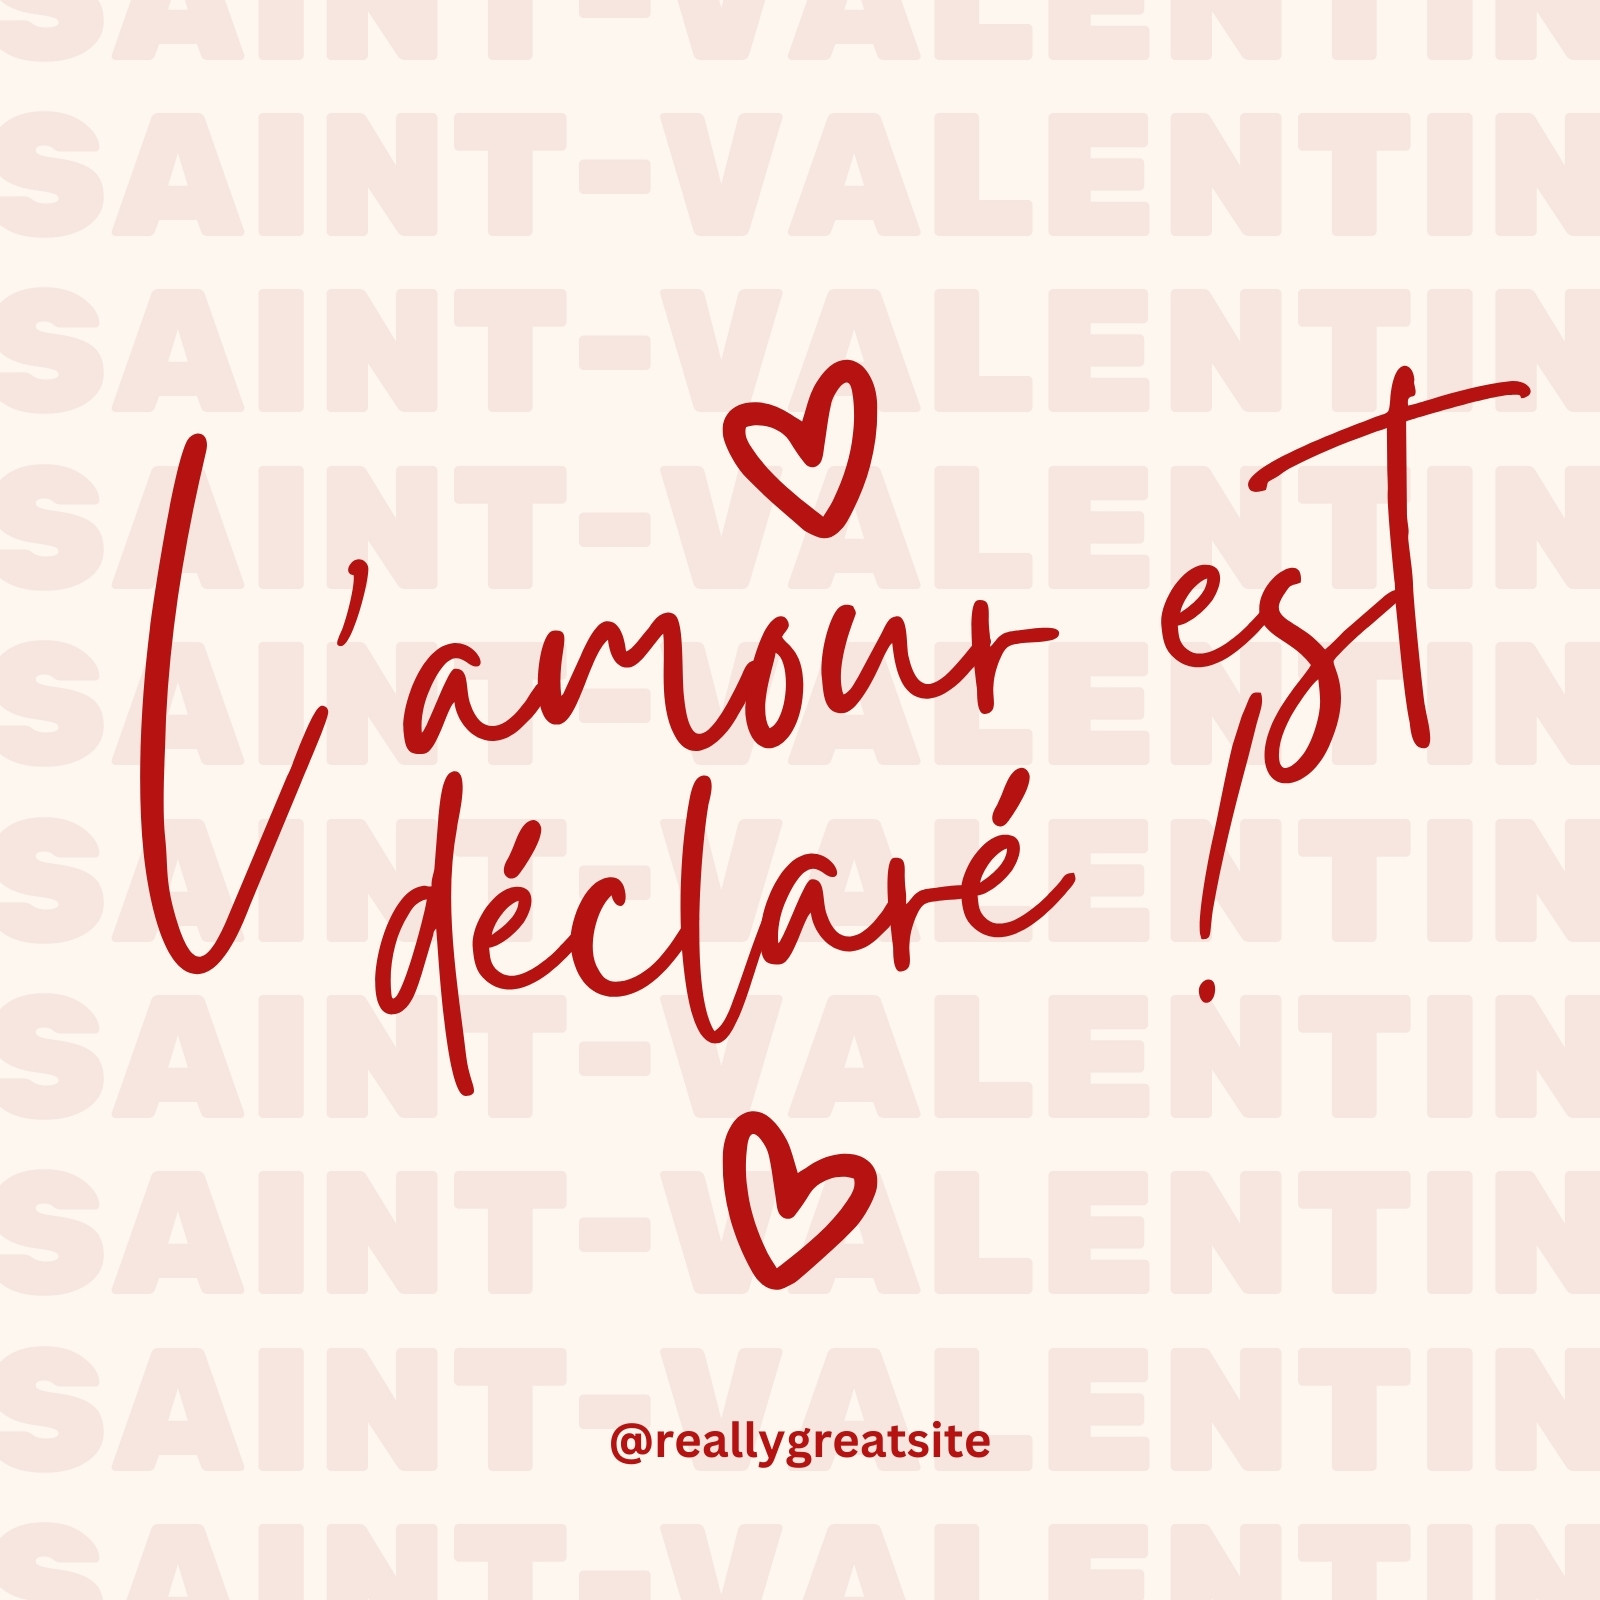 saint valentin : modèles gratuits à personnaliser - Canva